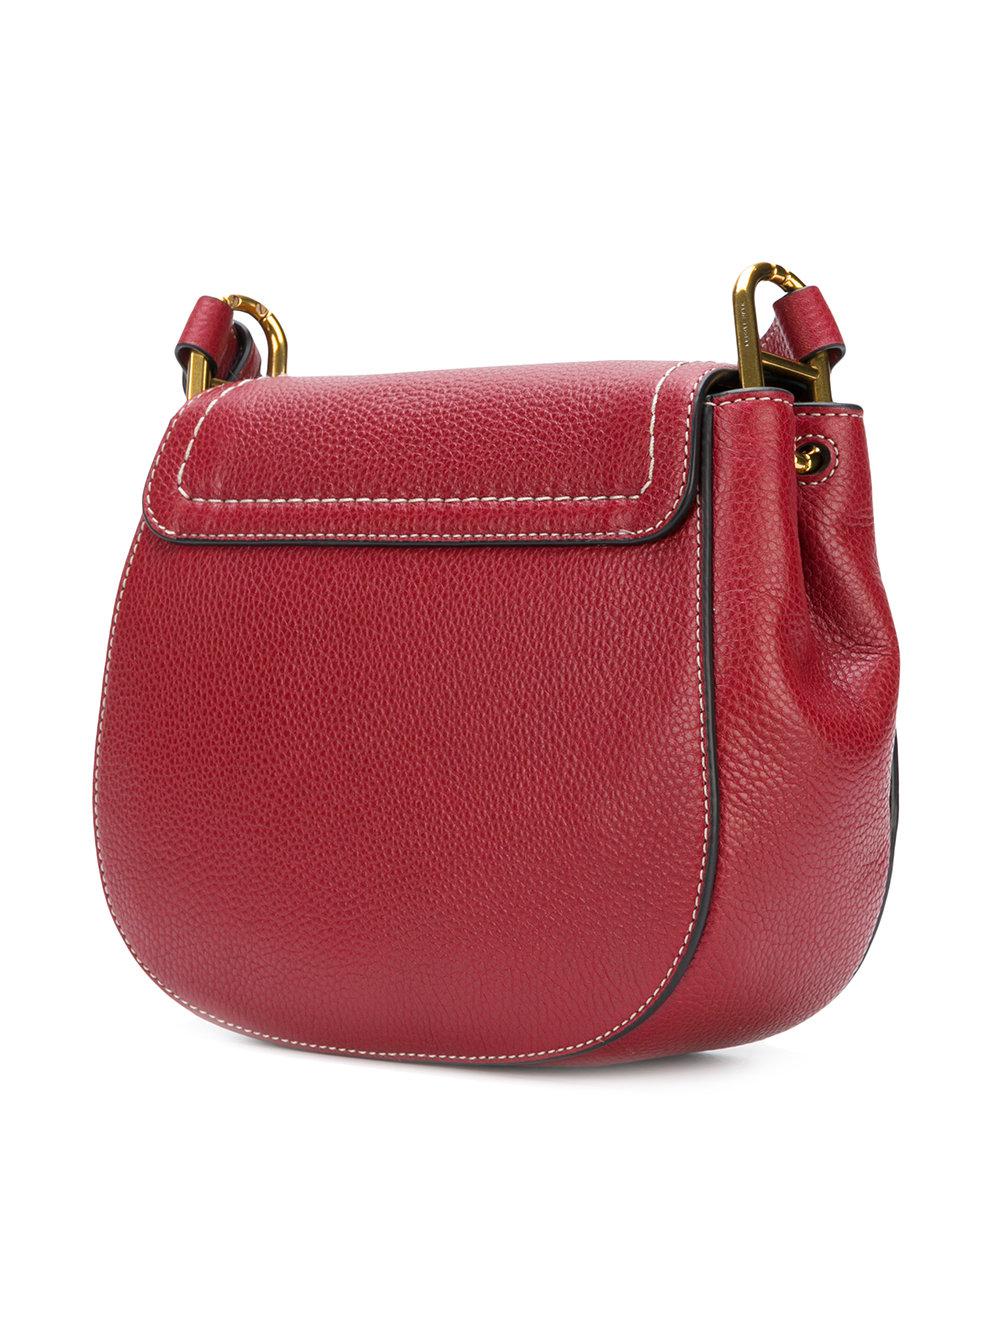 Marc Jacobs Leather Maverick Shoulder Bag in Red - Lyst